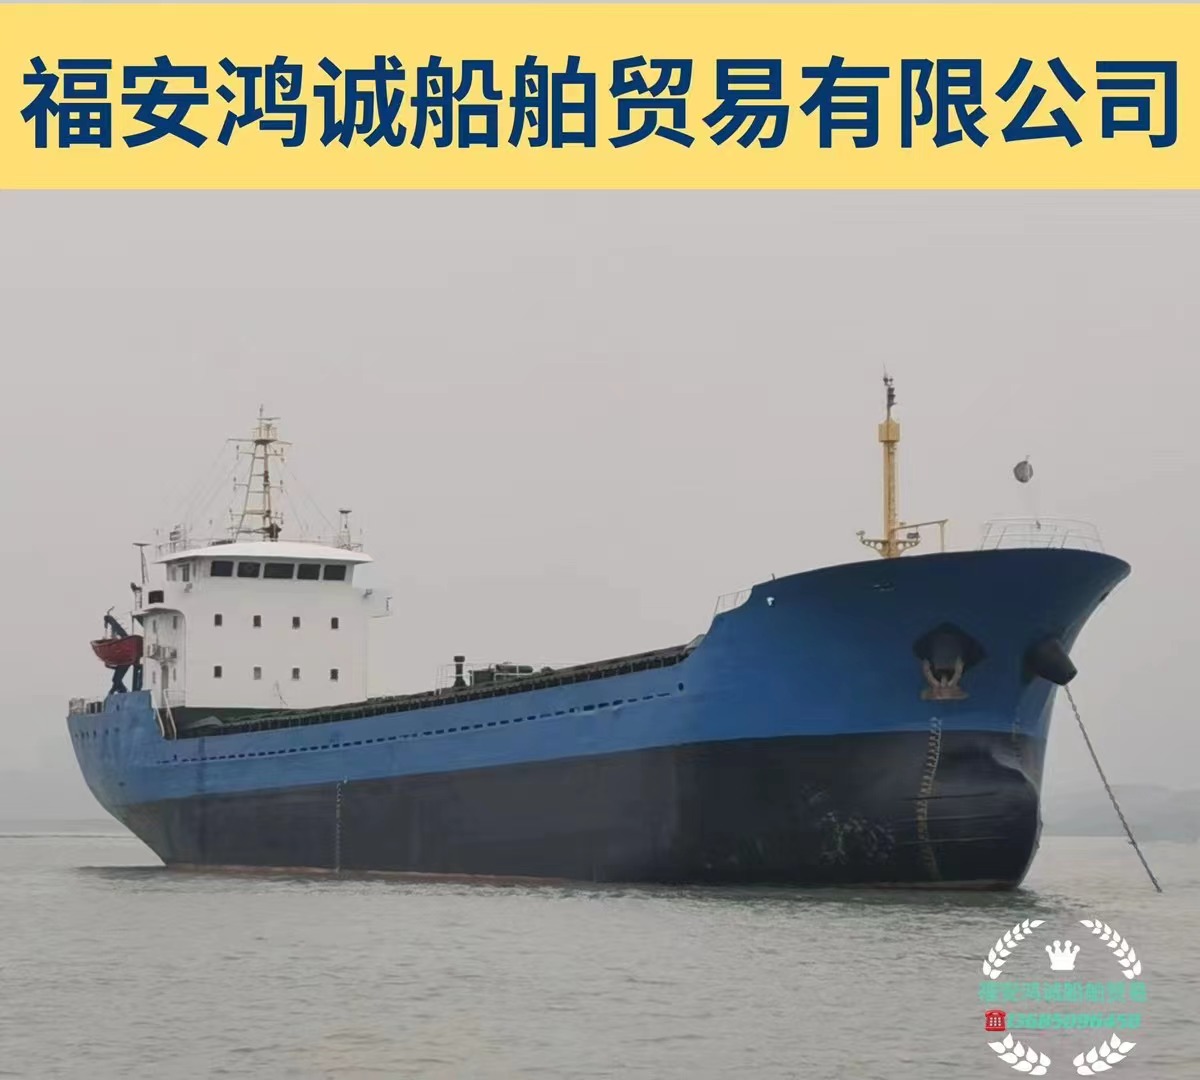 出售3300吨散货船： 建造地址：浙江台州 建造年份：2005年